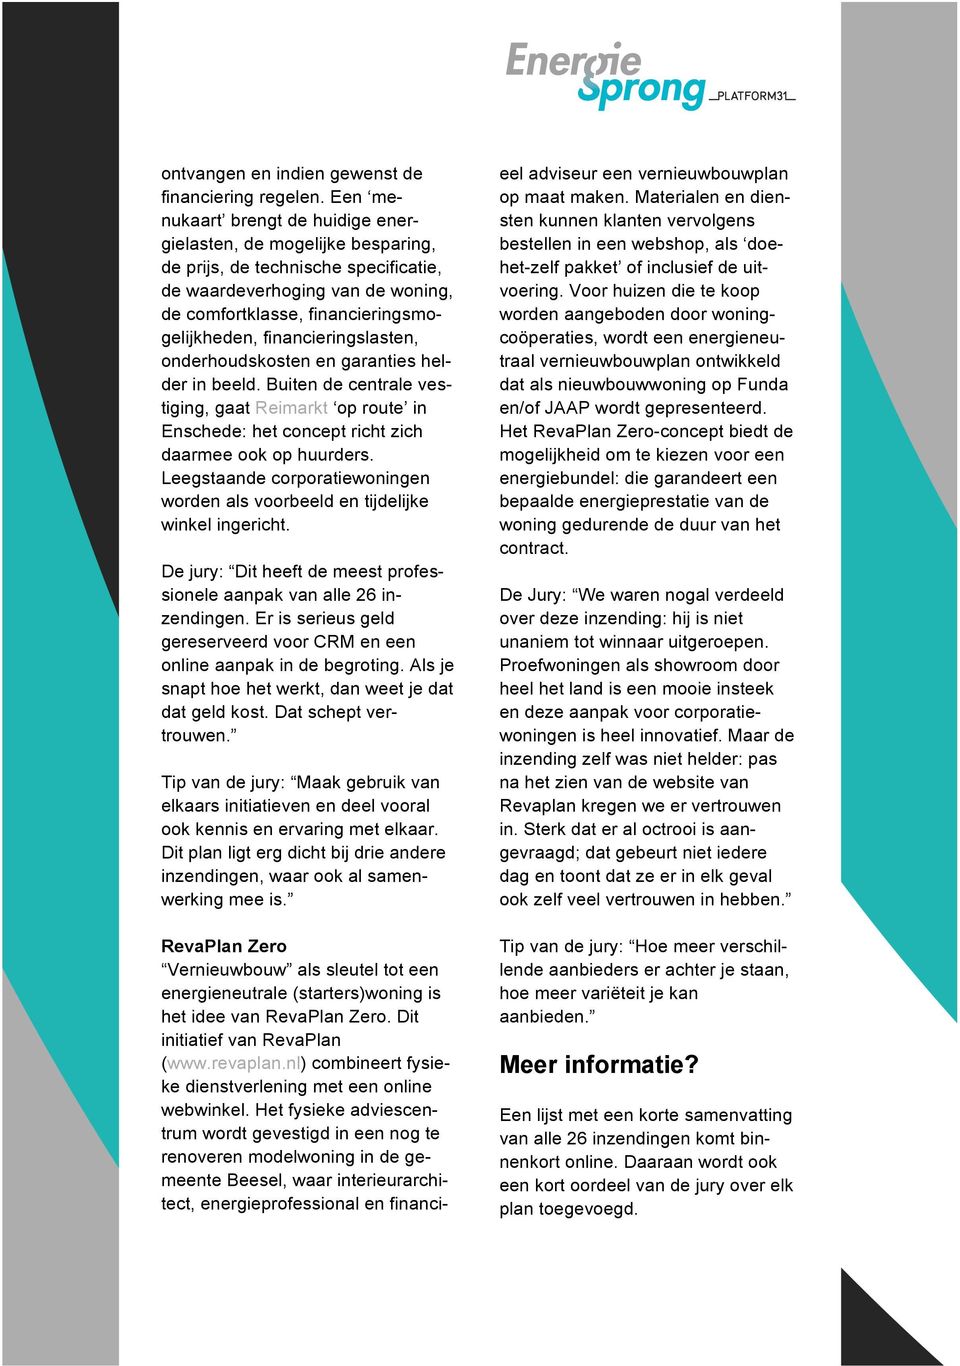 financieringslasten, onderhoudskosten en garanties helder in beeld. Buiten de centrale vestiging, gaat Reimarkt op route in Enschede: het concept richt zich daarmee ook op huurders.